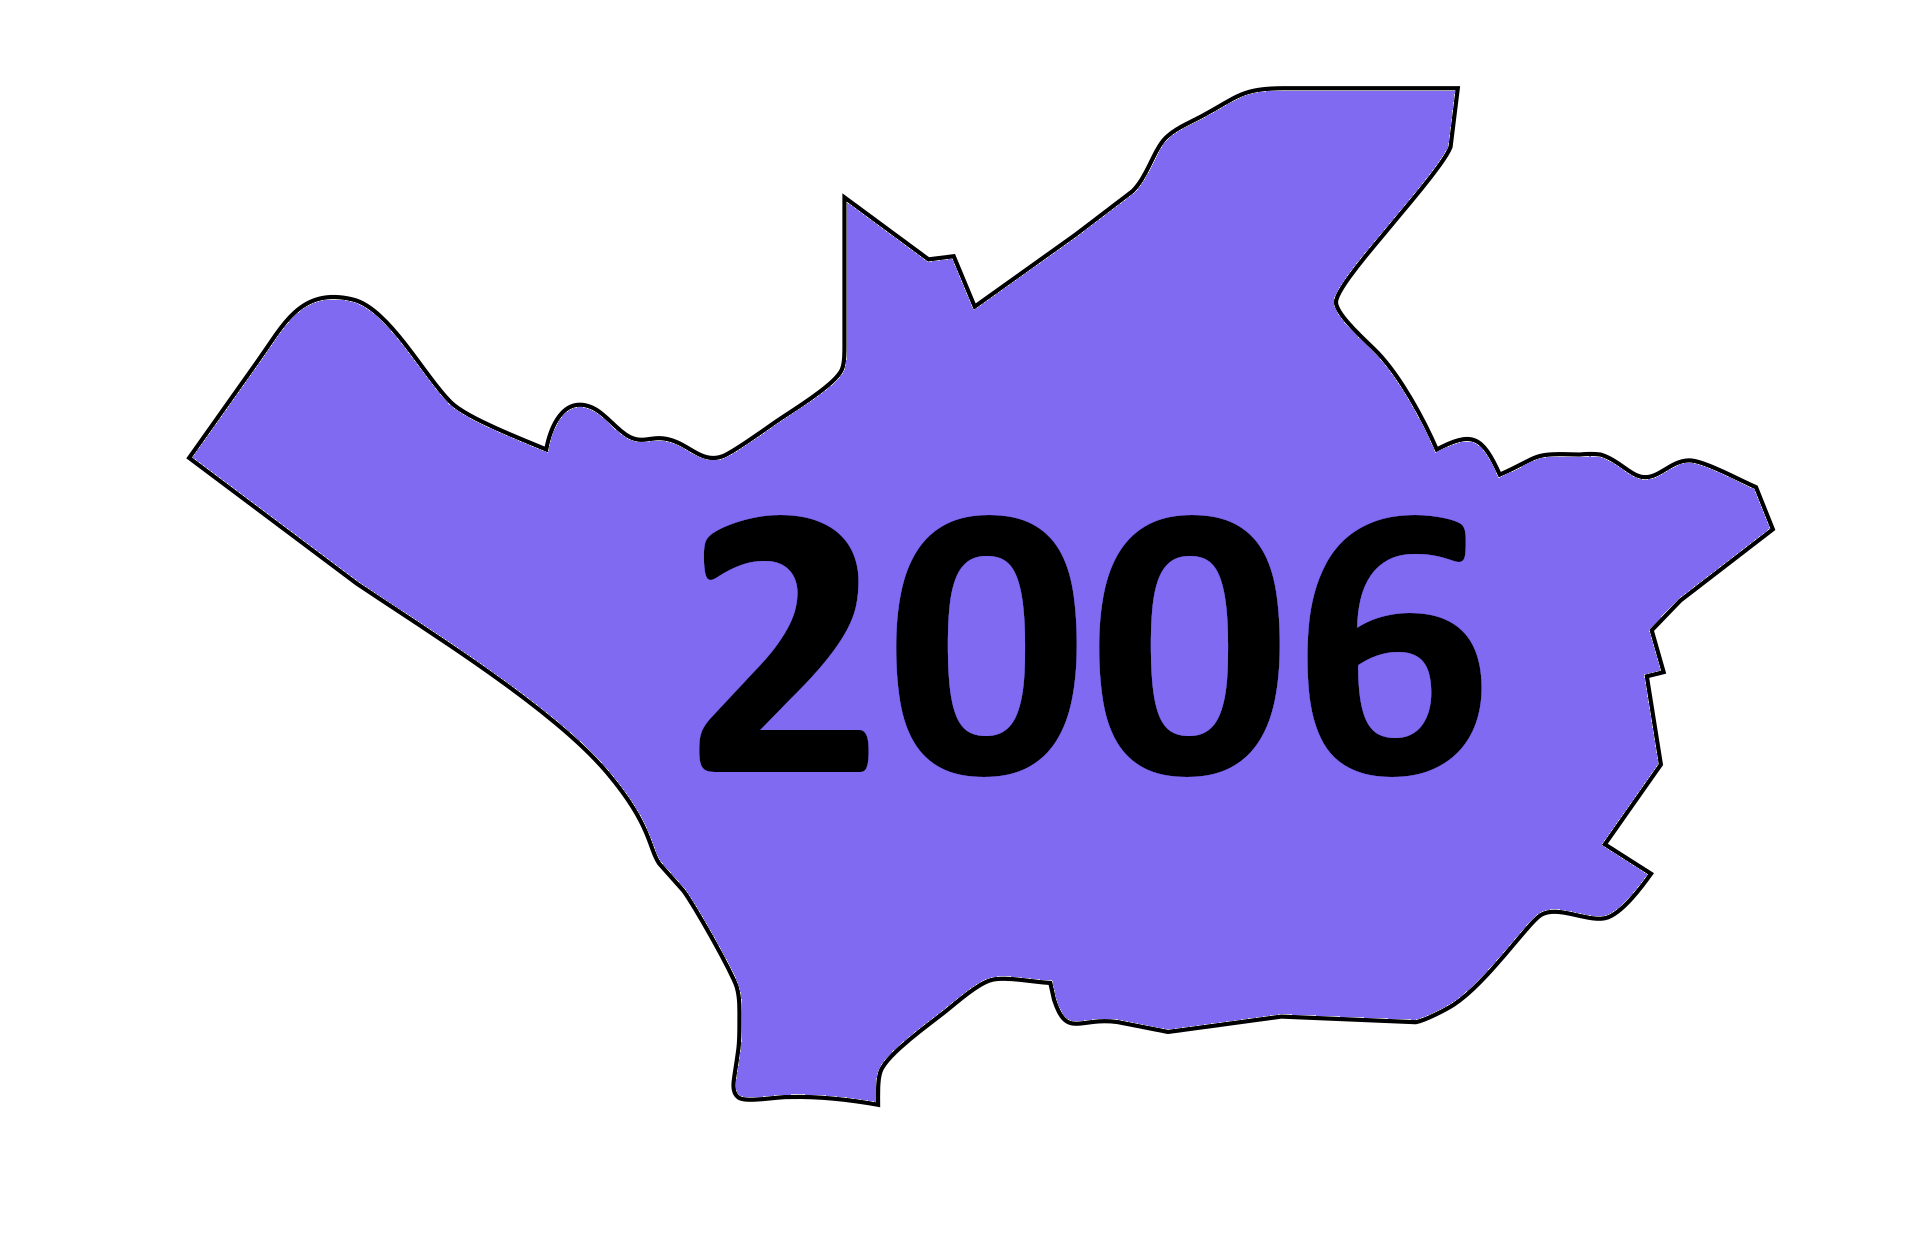 31.03.2006: Neuer Name für Förderverein der Landesgartenschau